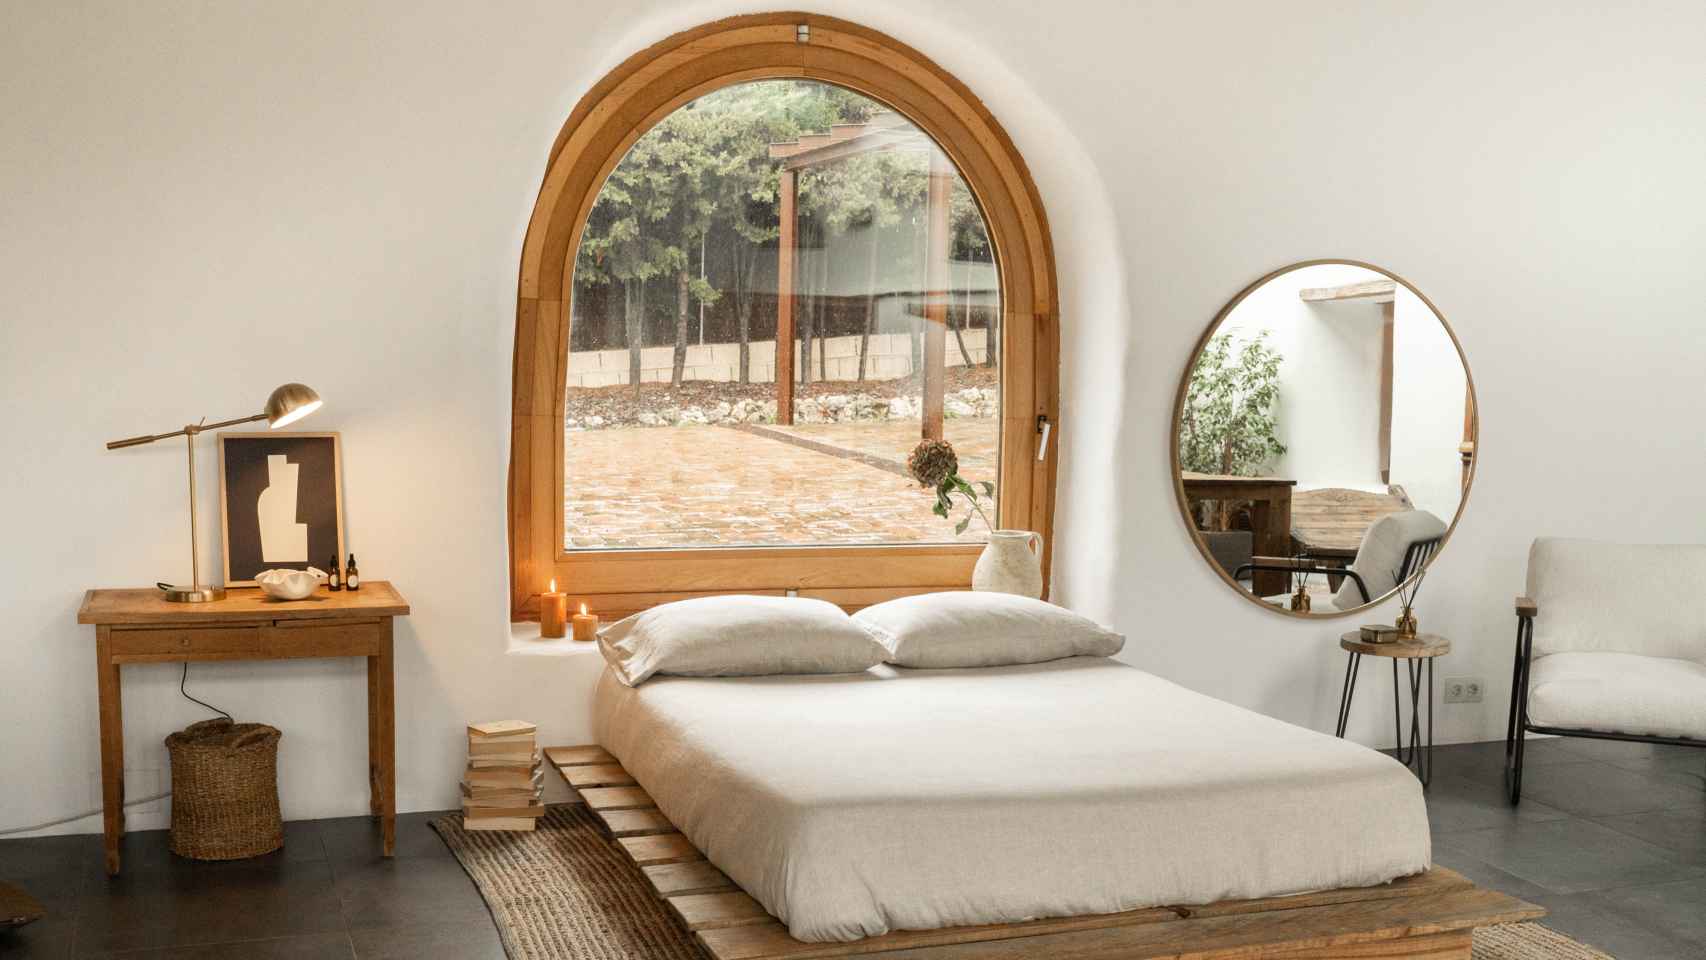 Dormitorio conformado con los muebles ecológicos y artesanales de Hannun.